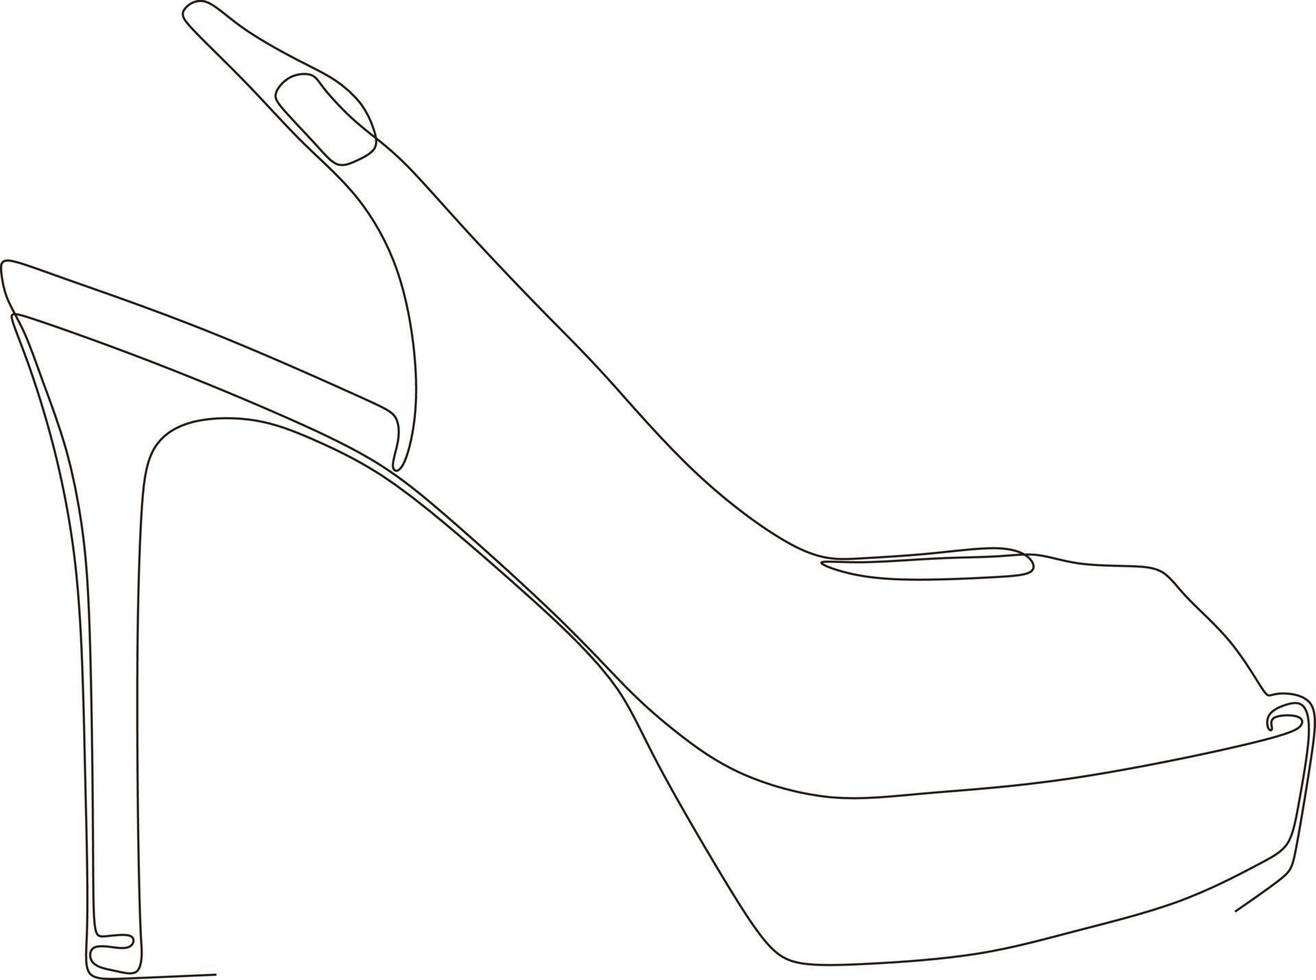 dibujo de arte de línea continua de sandalias de mujer con tacones altos en blanco y negro vector